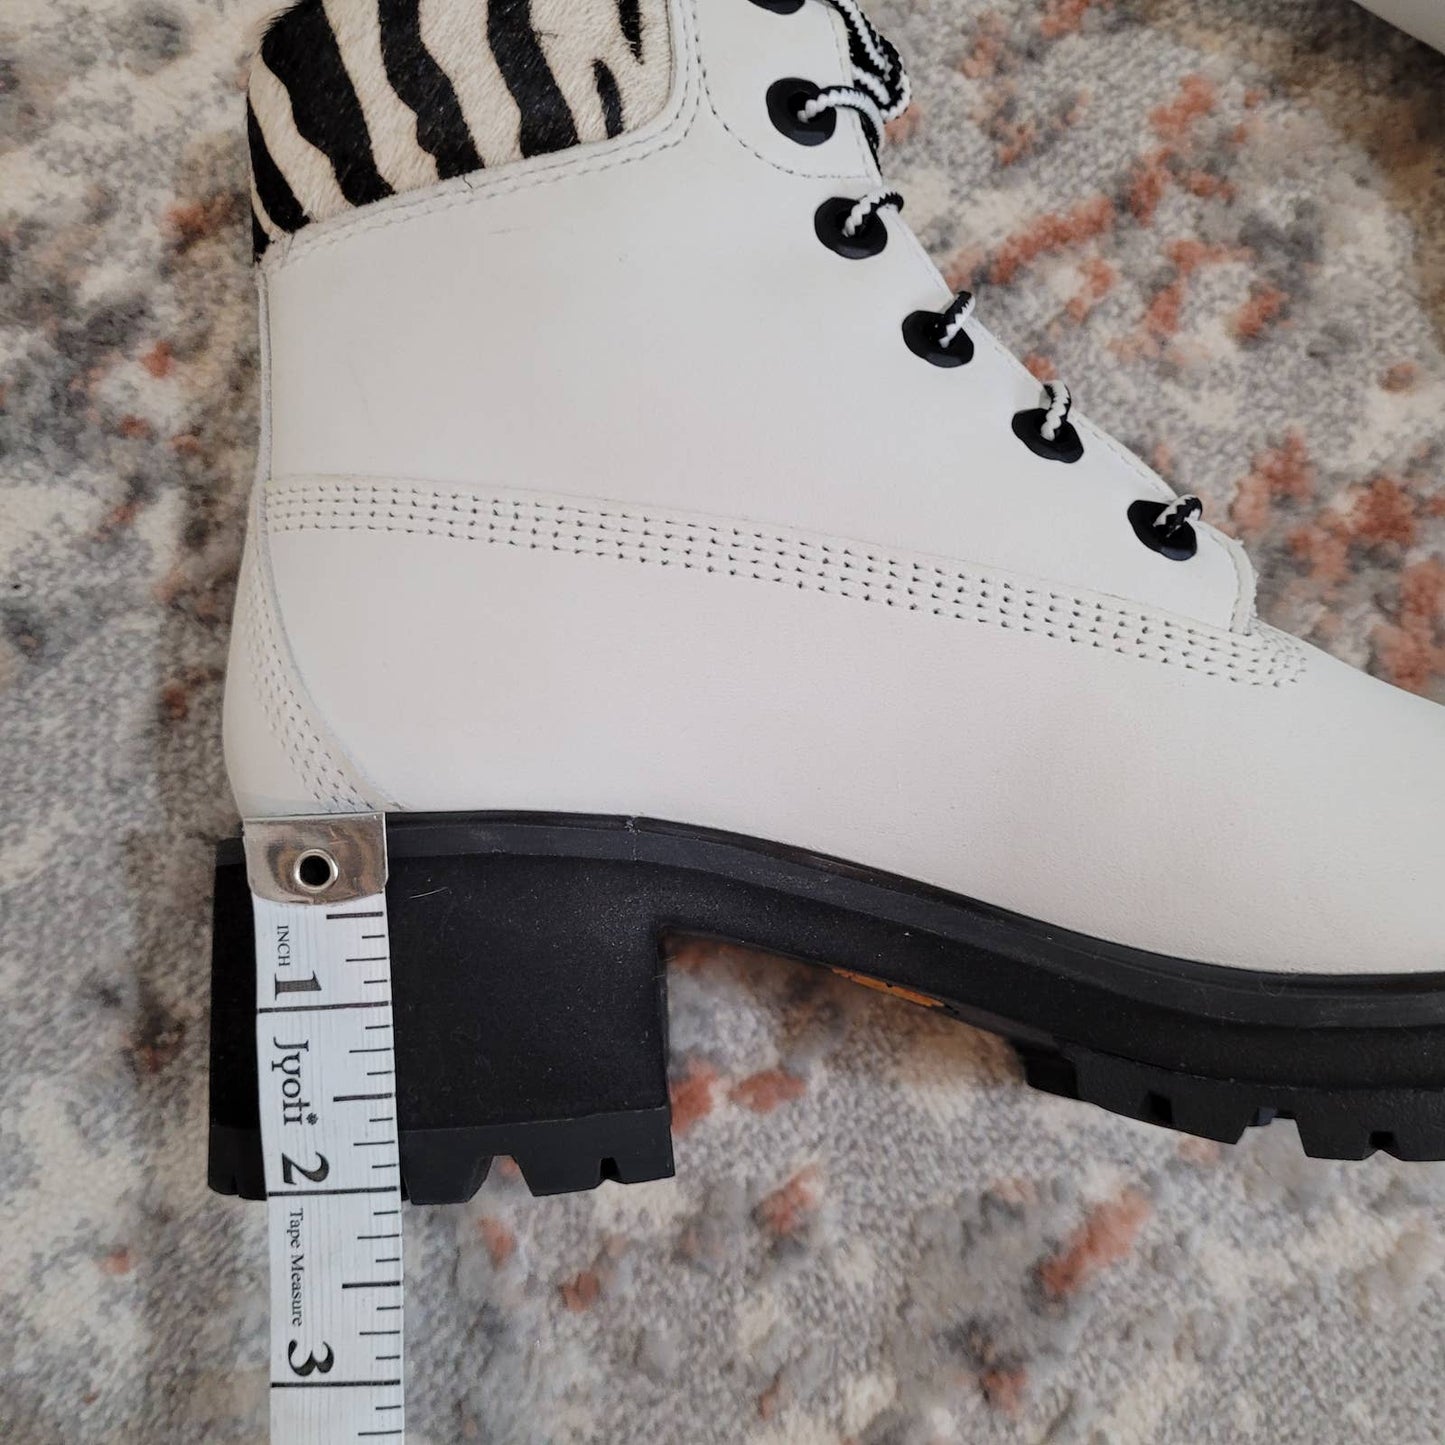 Timberland Kinsley Waterproof Boots - Size 8, White with Zebra PrintMarkita's ClosetTimberland